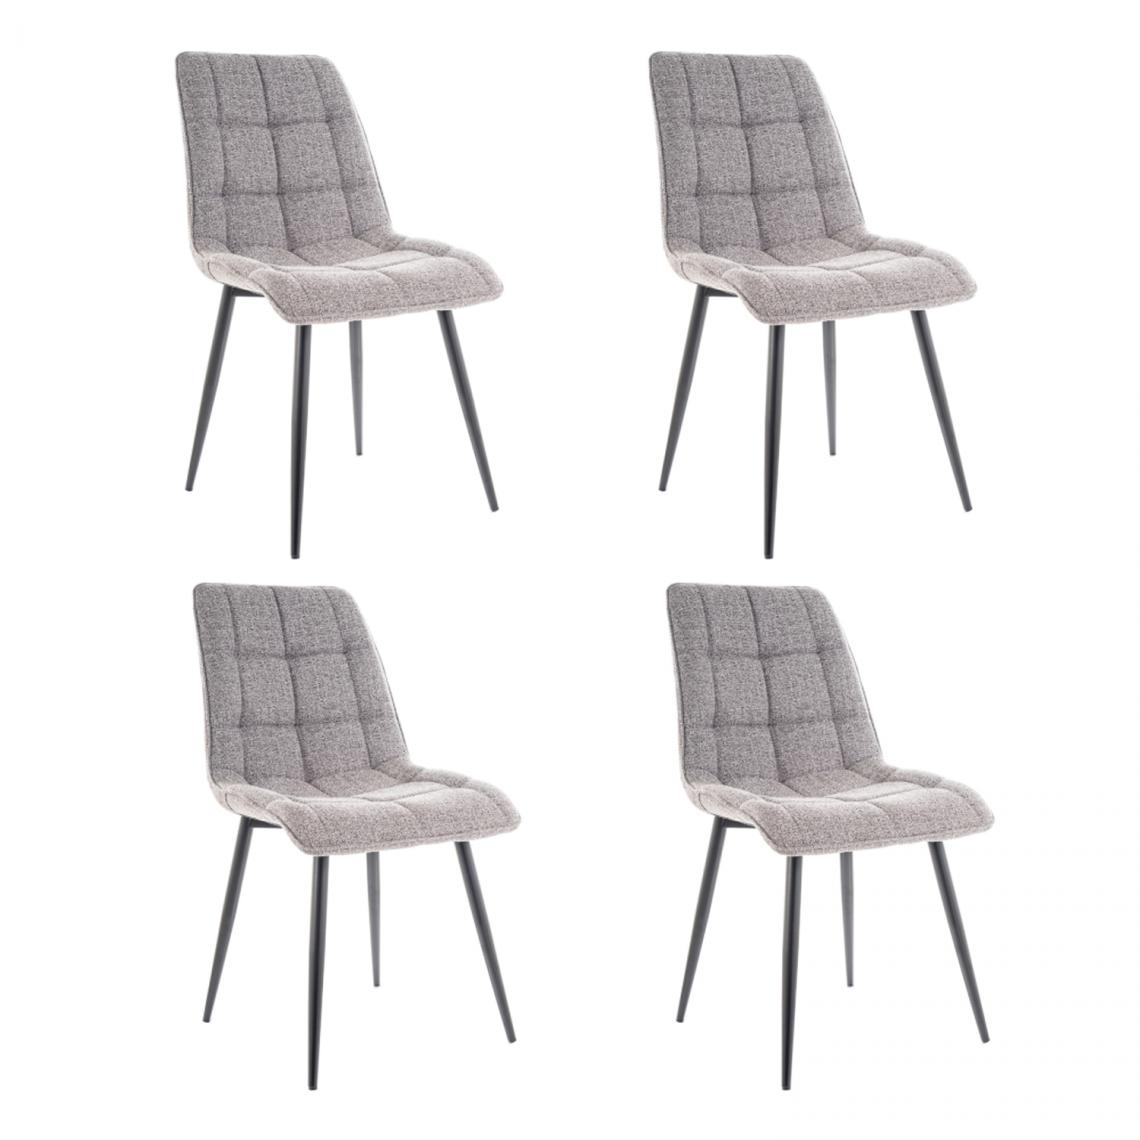 Hucoco - CHIM - Lot de 4 chaises matelassées salle à manger - 89x51x44 cm - Tissu velouté - Pieds en métal - Gris - Chaises